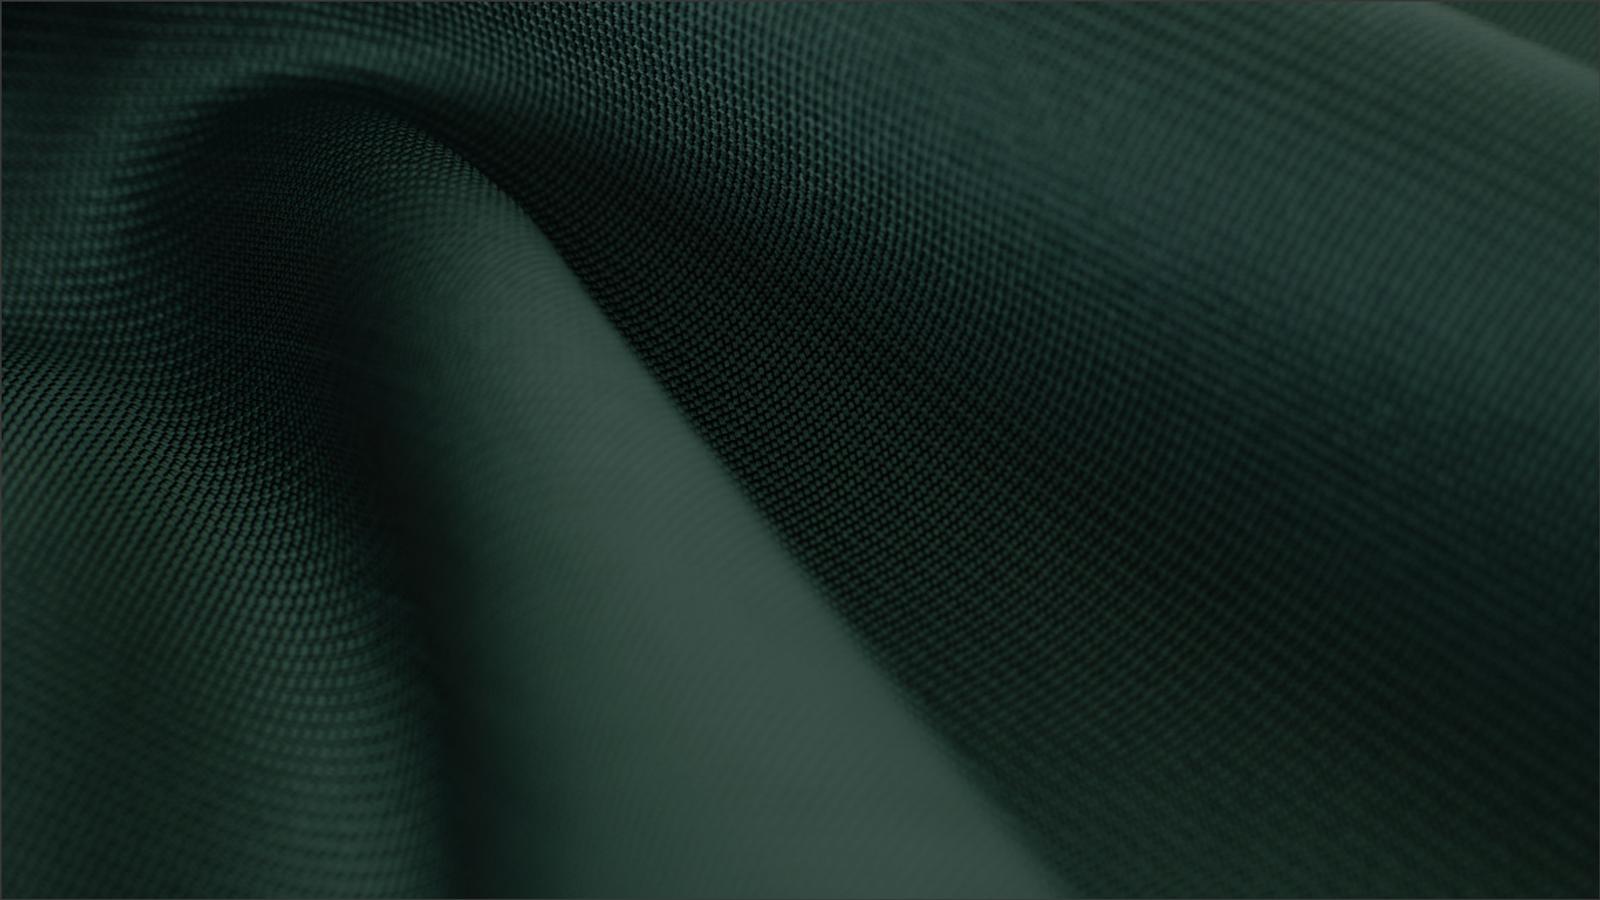 Fabric 2346211 1920